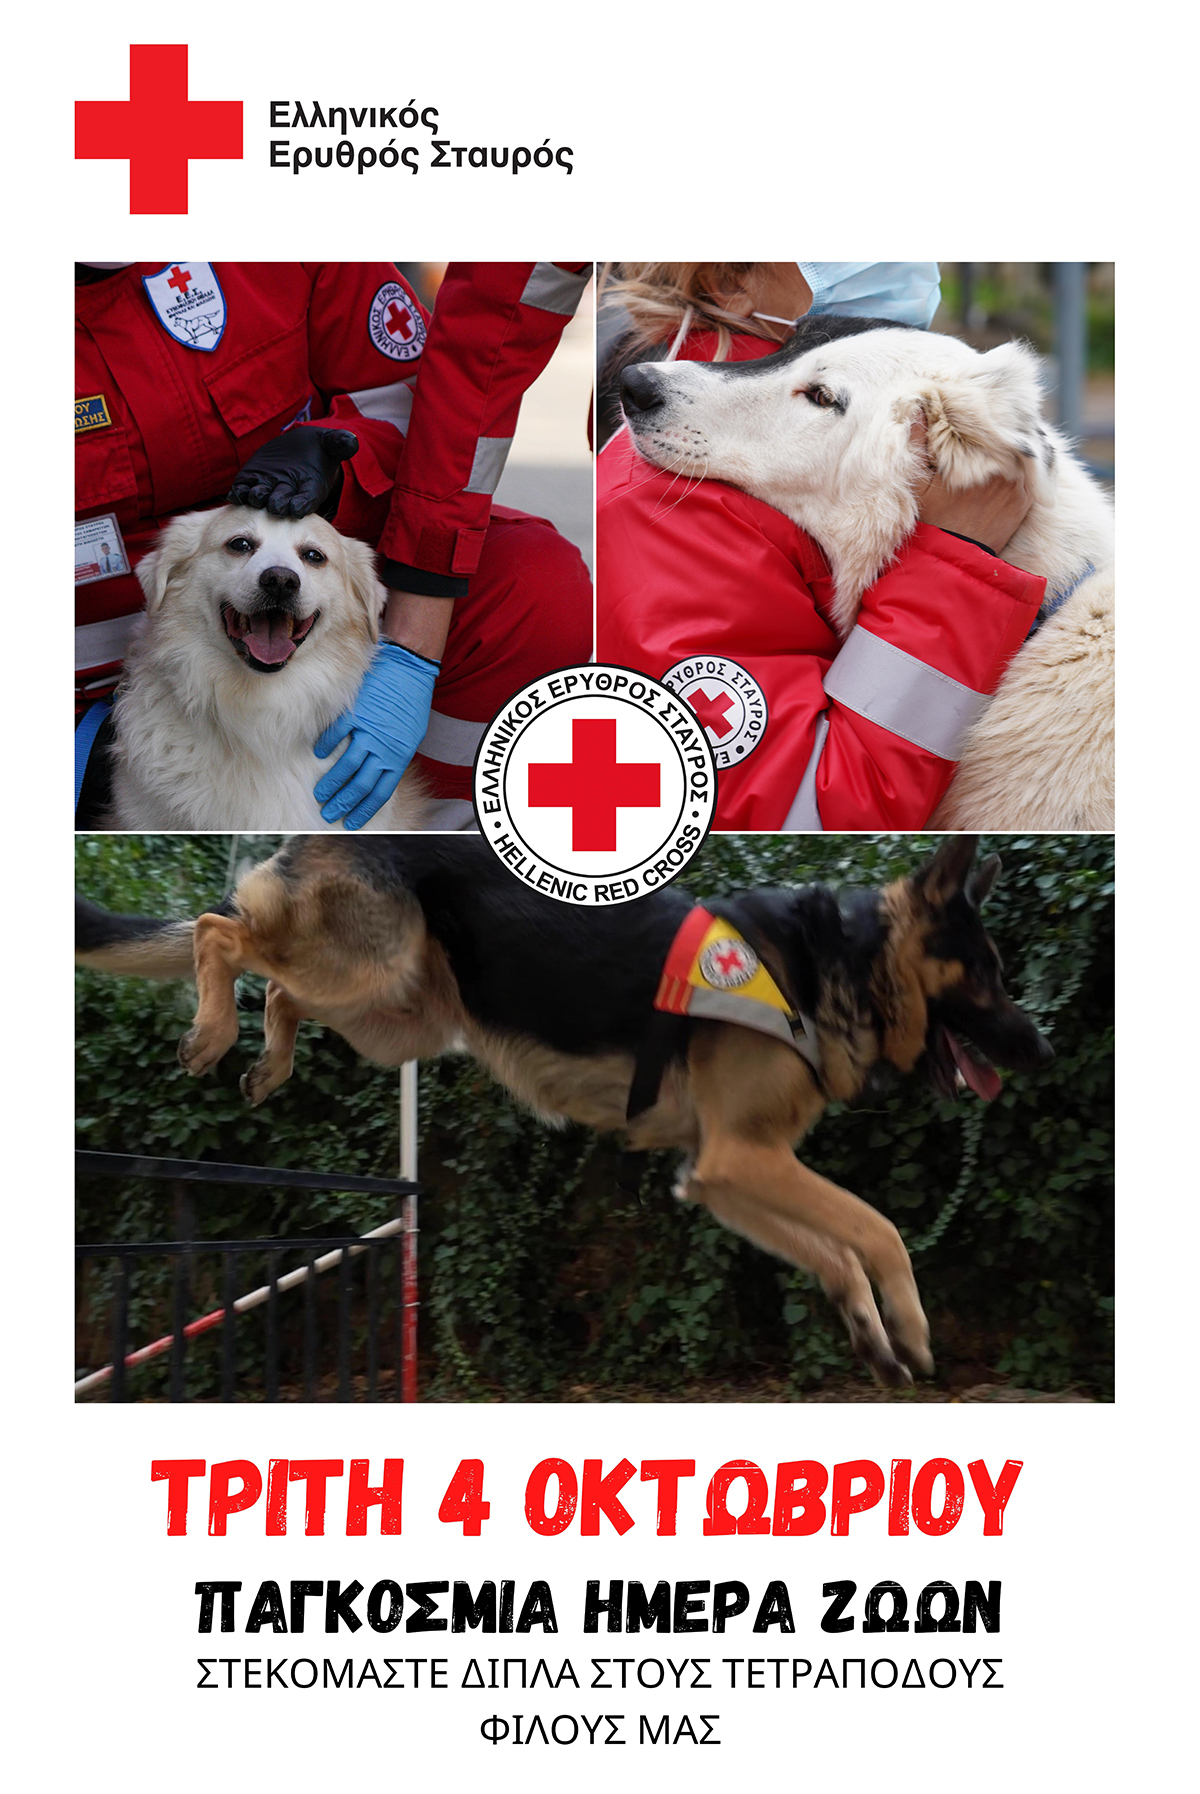 Ελληνικός Ερυθρός Σταυρός: Δράση ενημέρωσης για την ορθή αντιμετώπιση των οικόσιτων ζώων σε περιπτώσεις έκτακτης ανάγκης